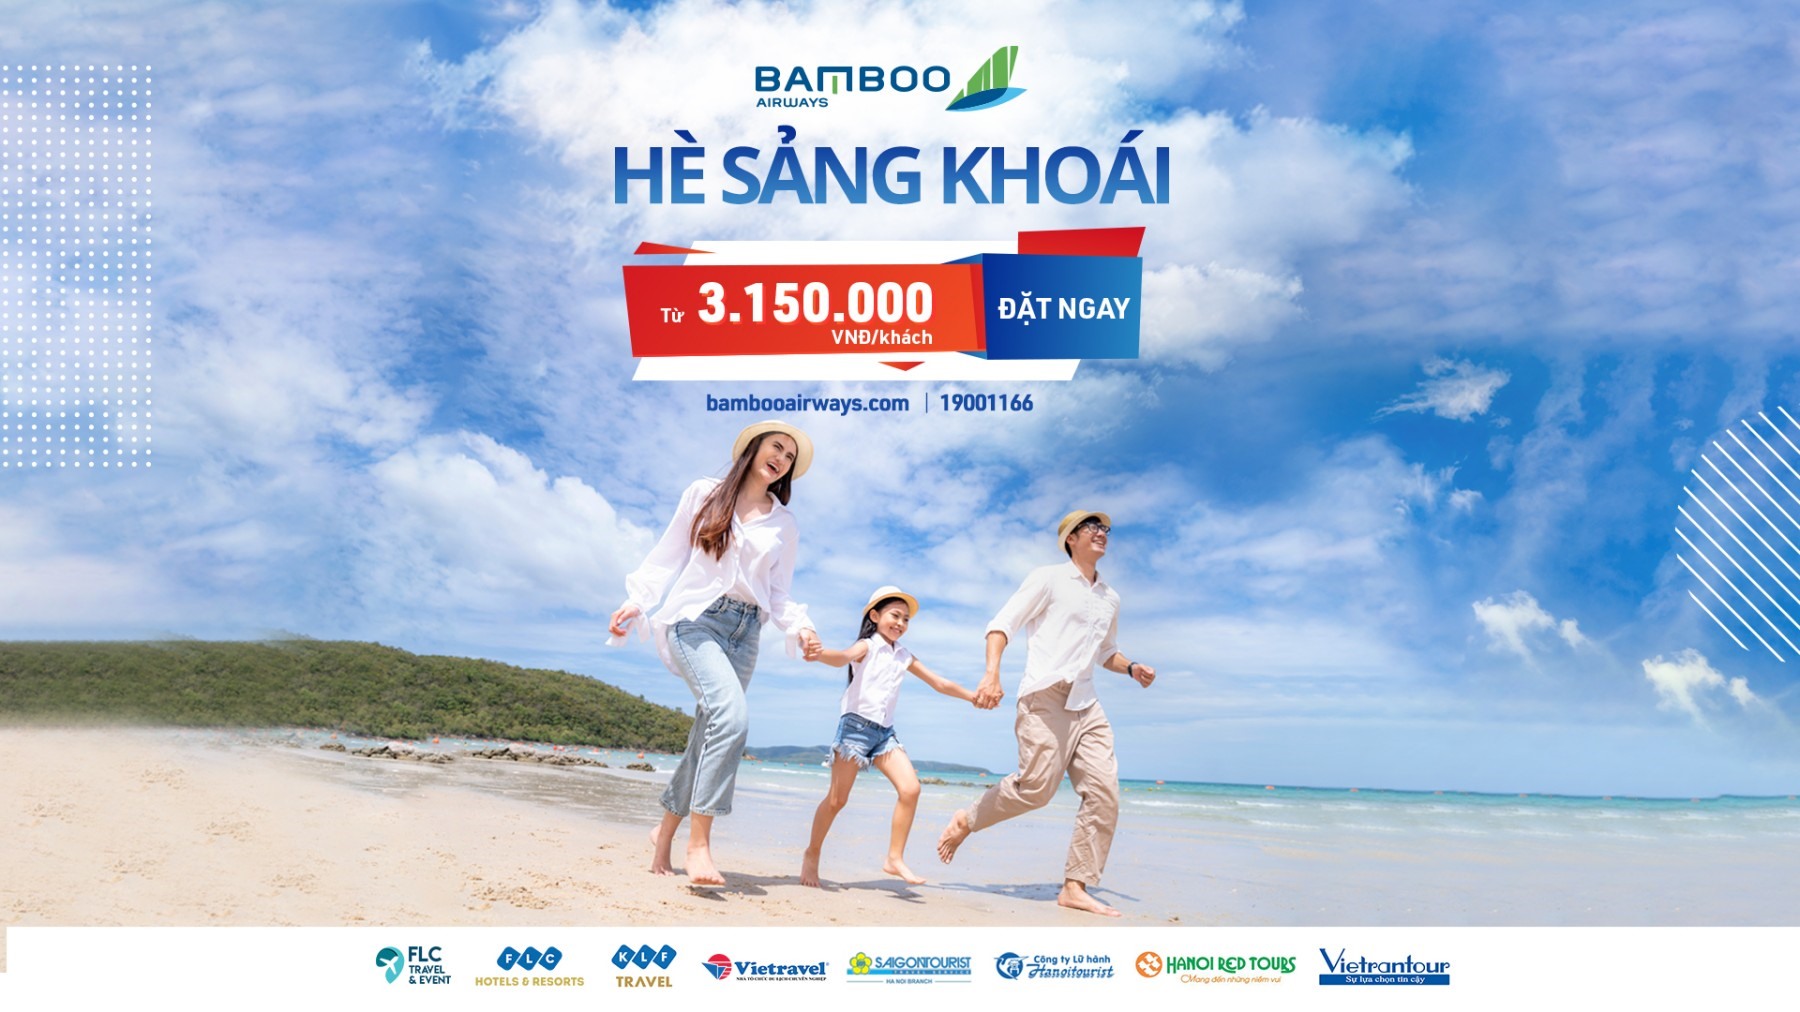 Các combo Hè sảng khoái của Bamboo Airways giúp khách hàng có thêm lựa chọn nghỉ dưỡng chất lượng 5 sao với mức giá ưu đãi